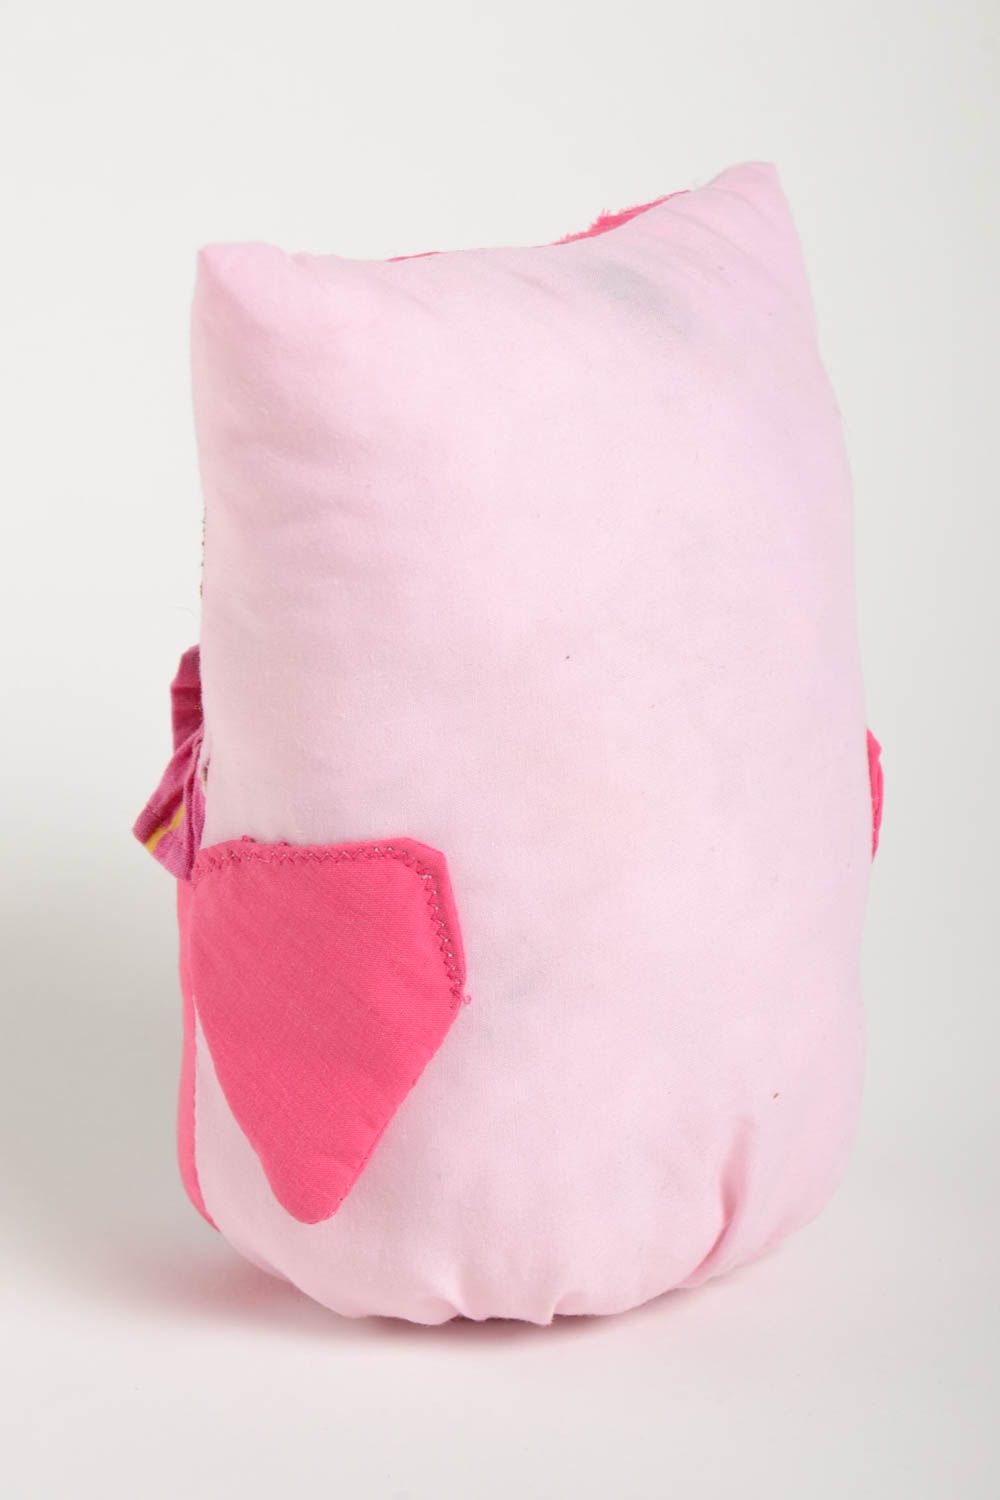 Игрушка ручной работы подарок на новоселье игрушка сова розовая из ткани фото 4